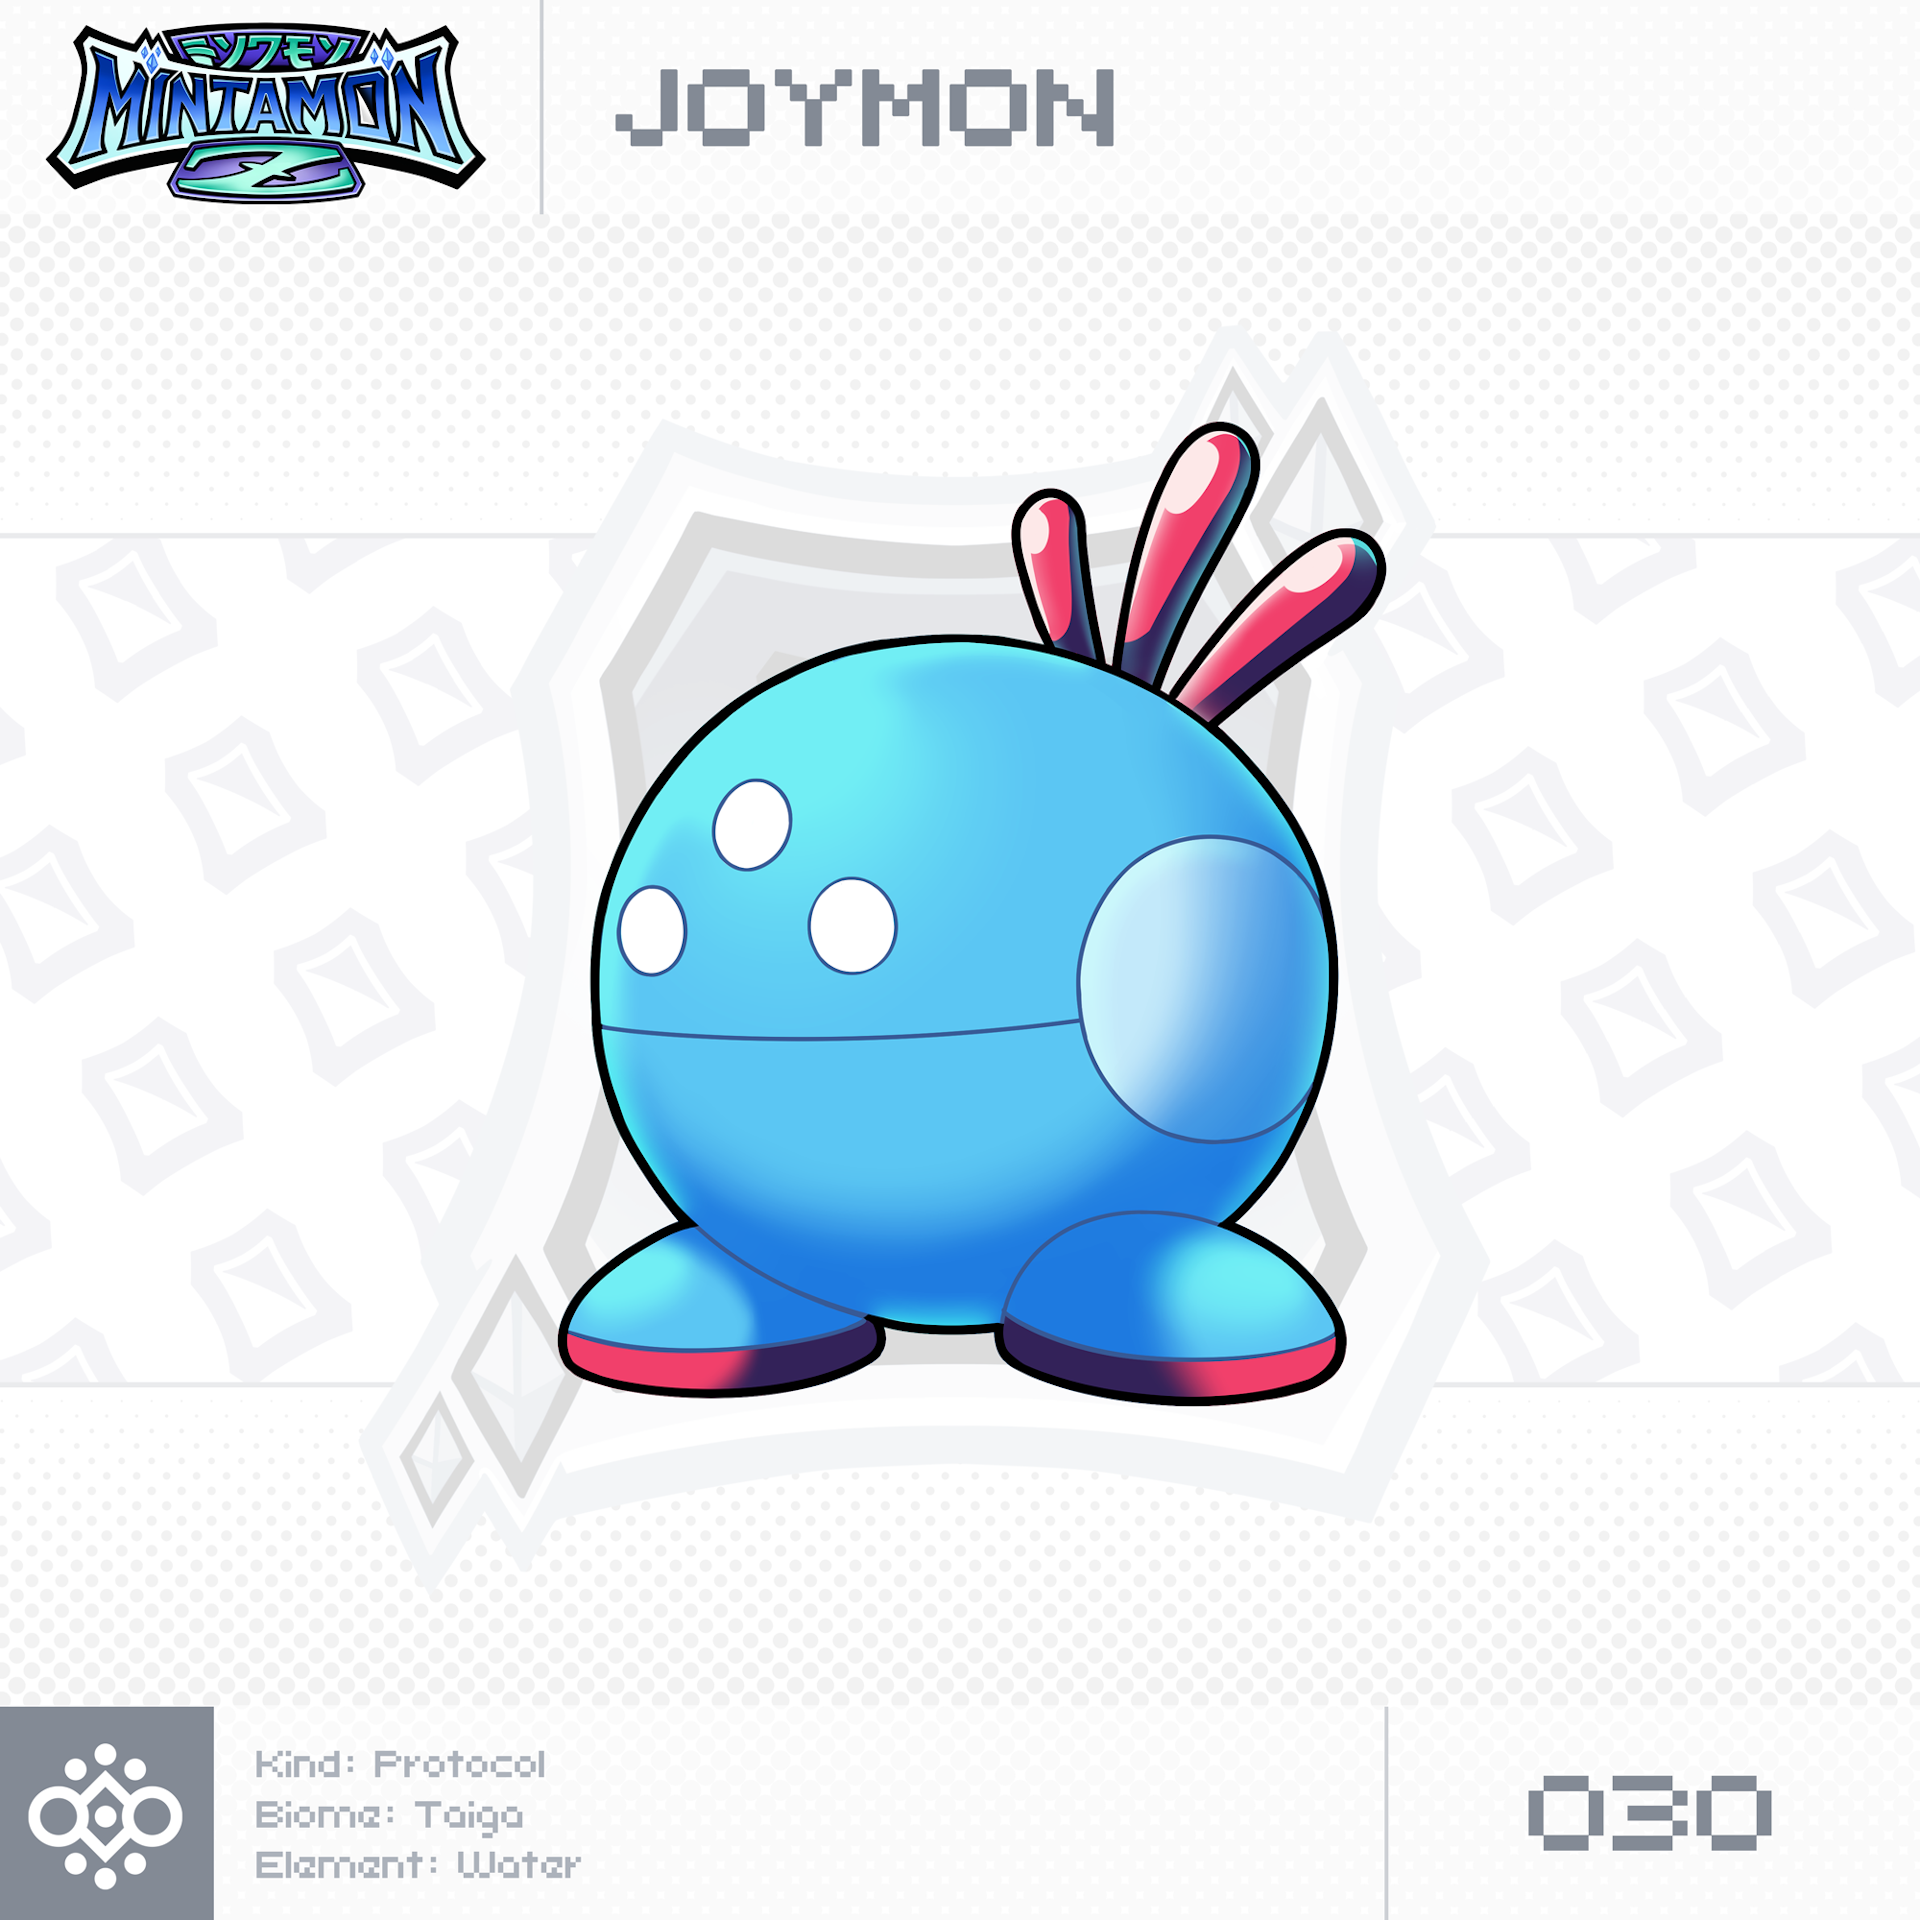 030 - Joymon